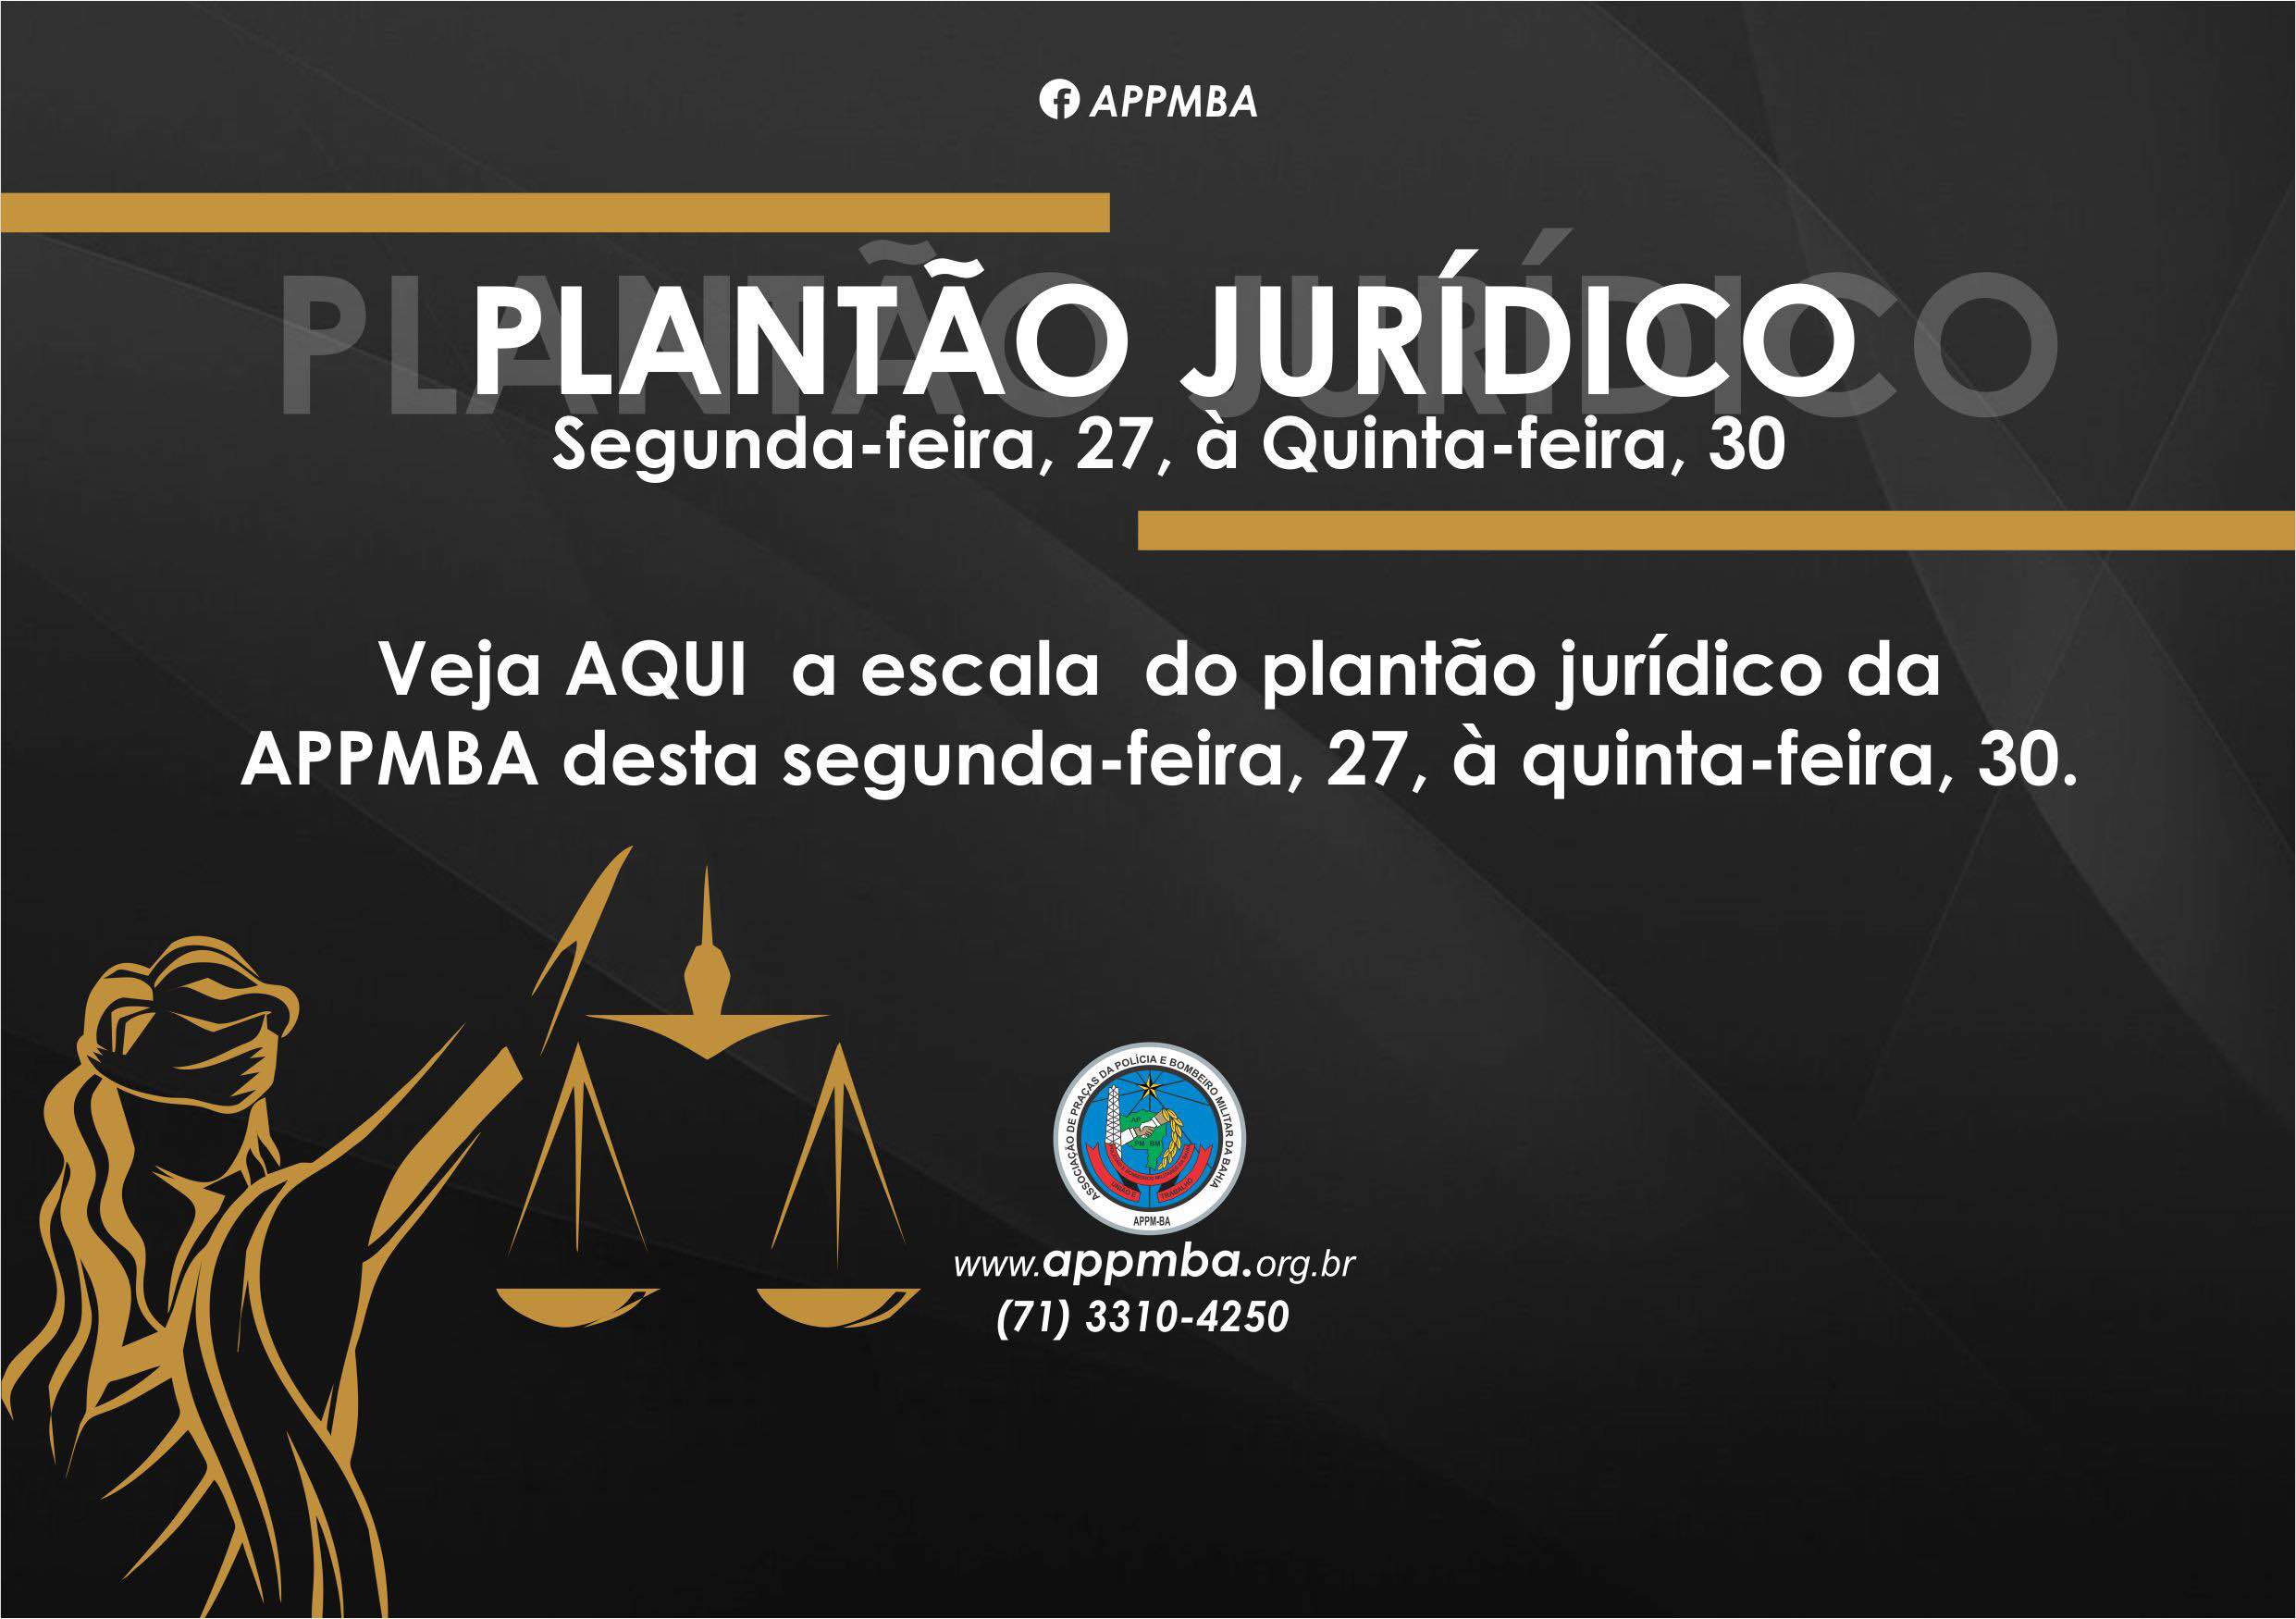 Plantão Jurídico APPM-BA, dias 27 à 30/11